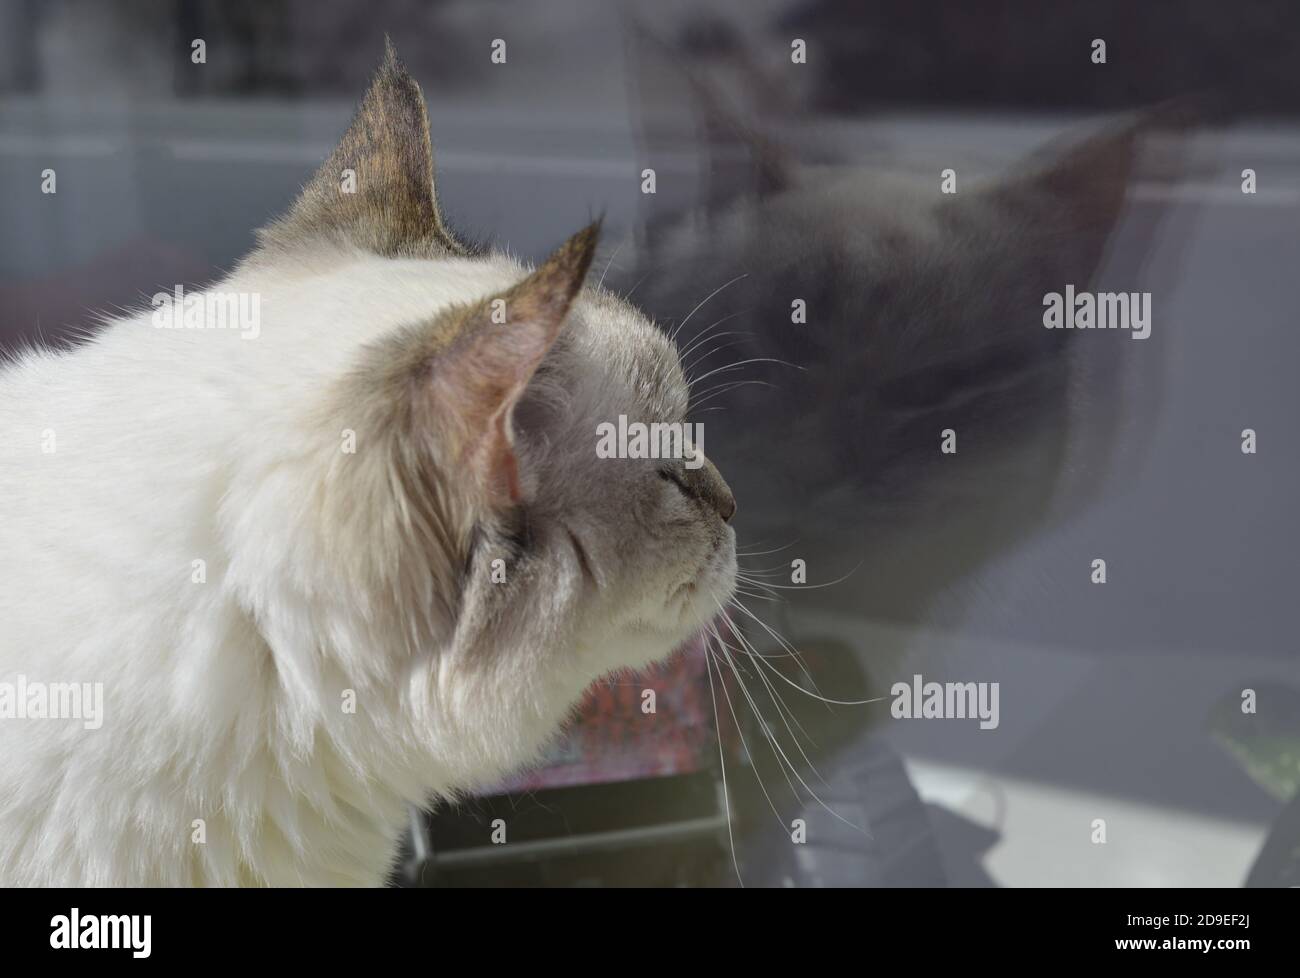 Il gatto guarda il suo riflesso nella finestra. Spazio di copia. Gatto balinese. Primo piano della testa. Foto di alta qualità. Foto Stock